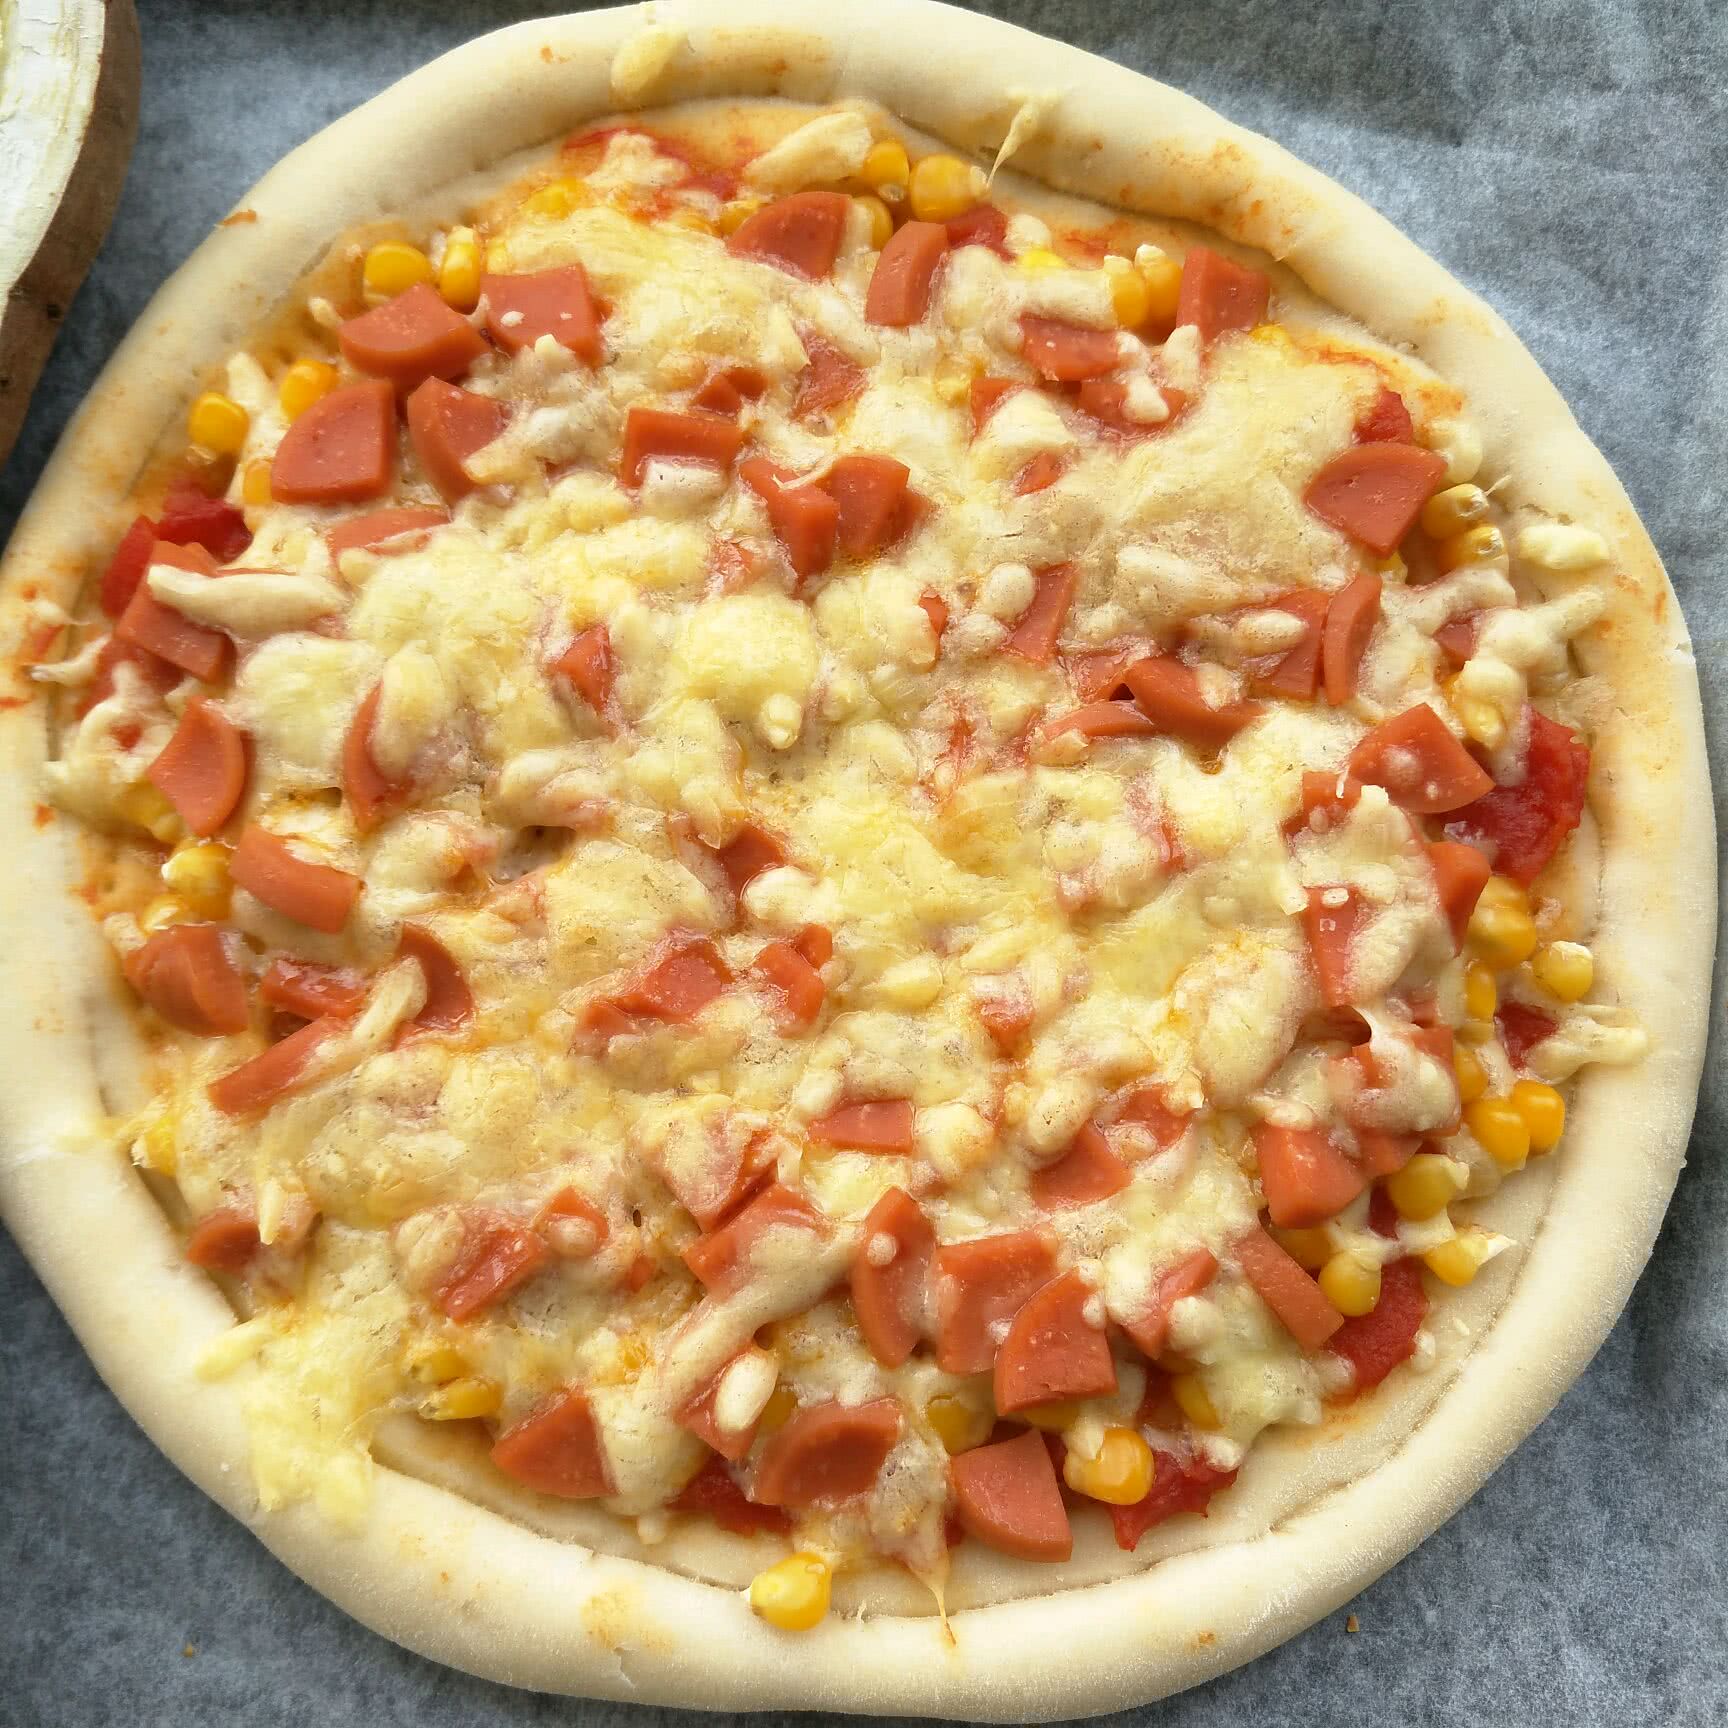 火腿肠披萨怎么做_火腿肠披萨的做法_豆果美食